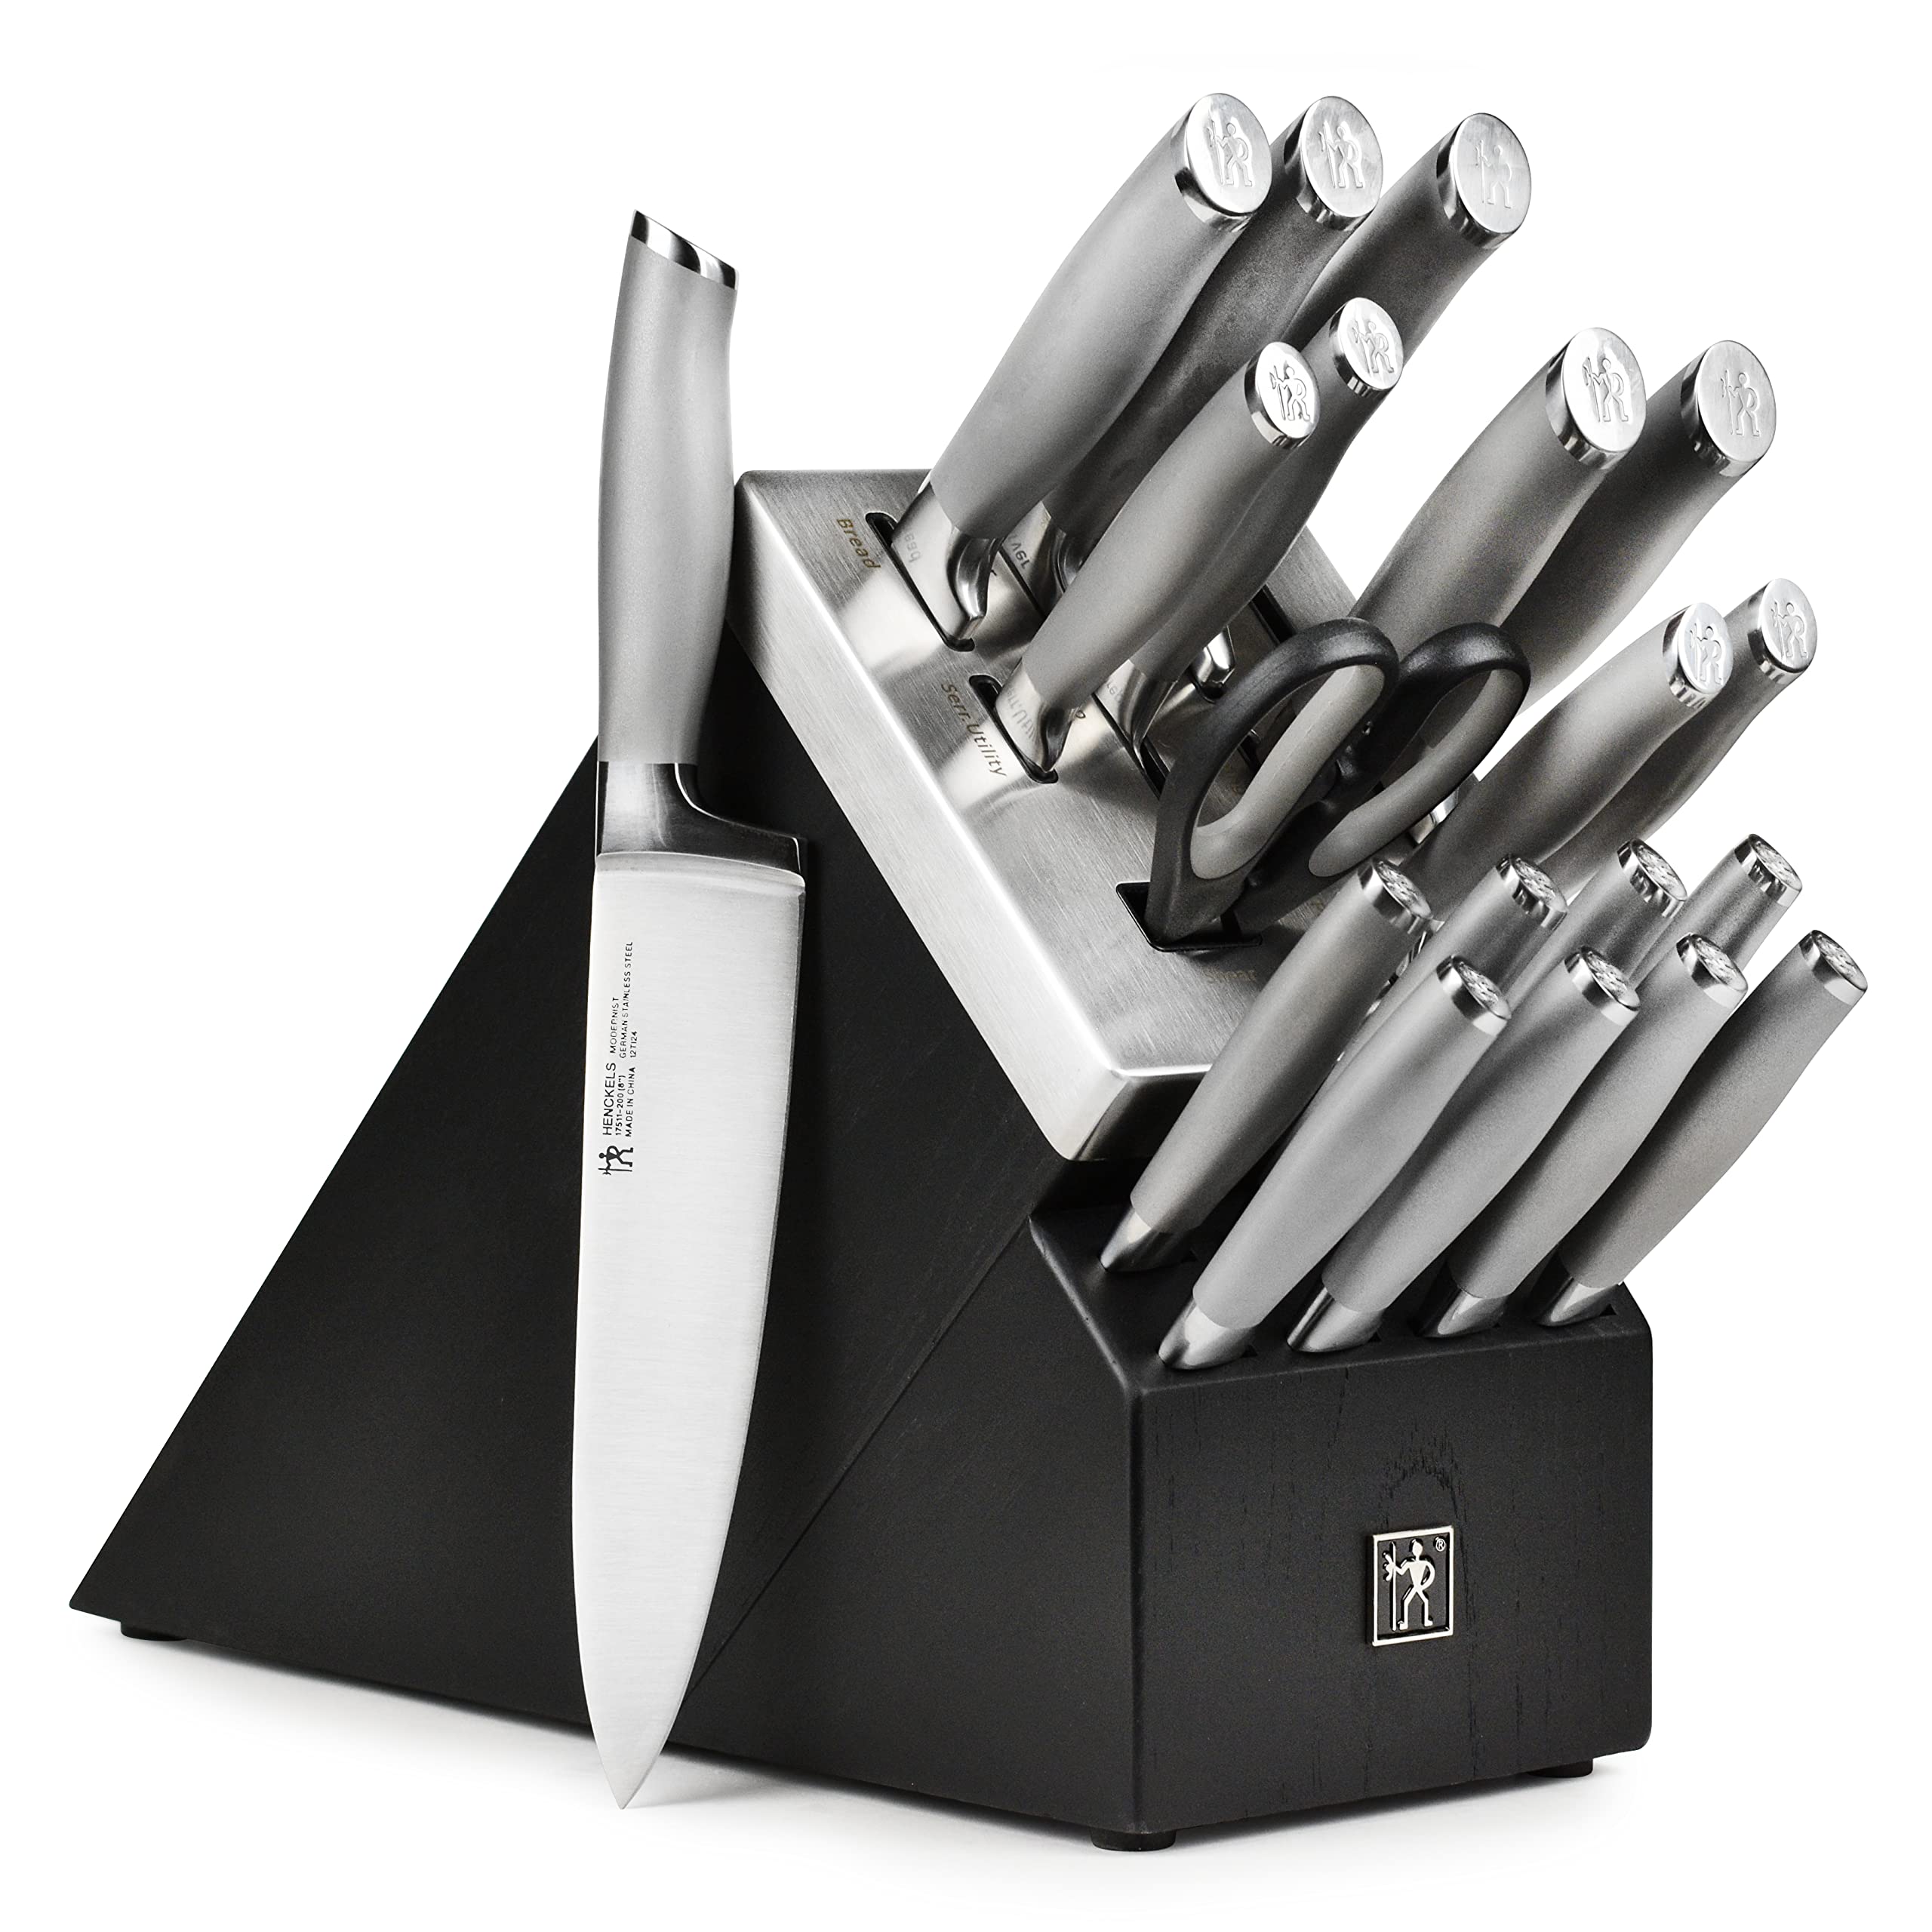 henckels modernist knife block set